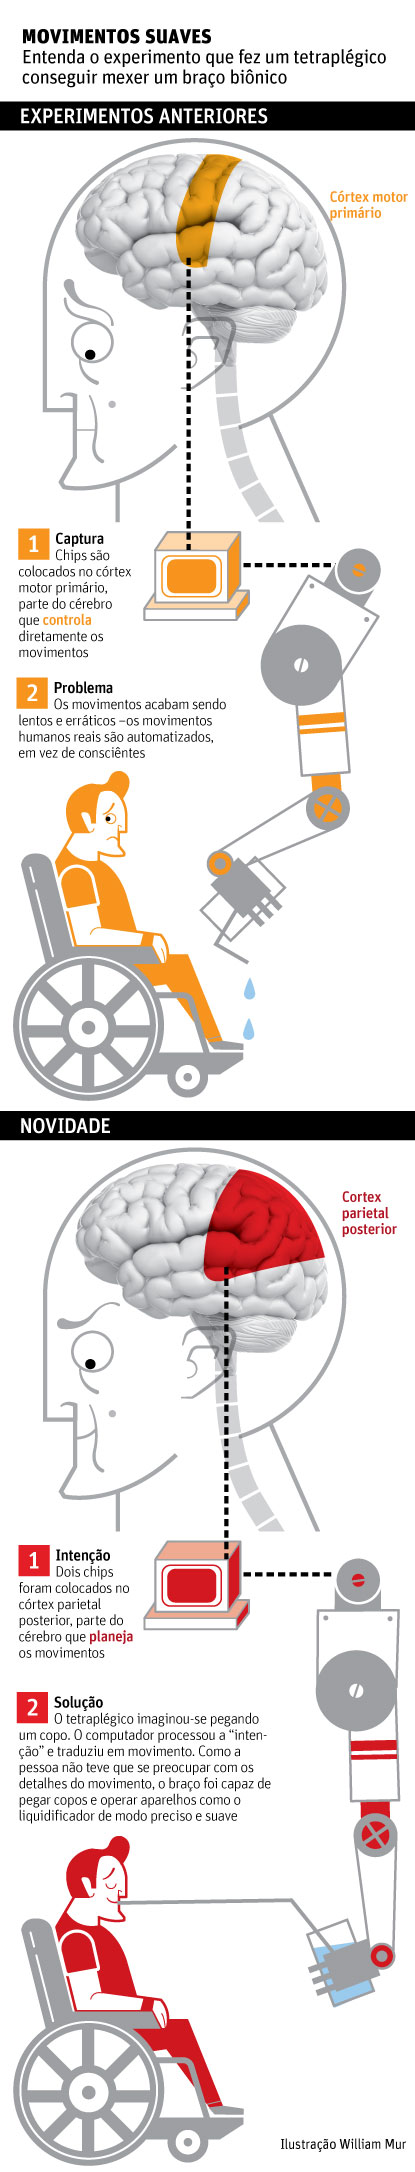 Chip no cérebro permite a tetraplégico voltar a mover a mão